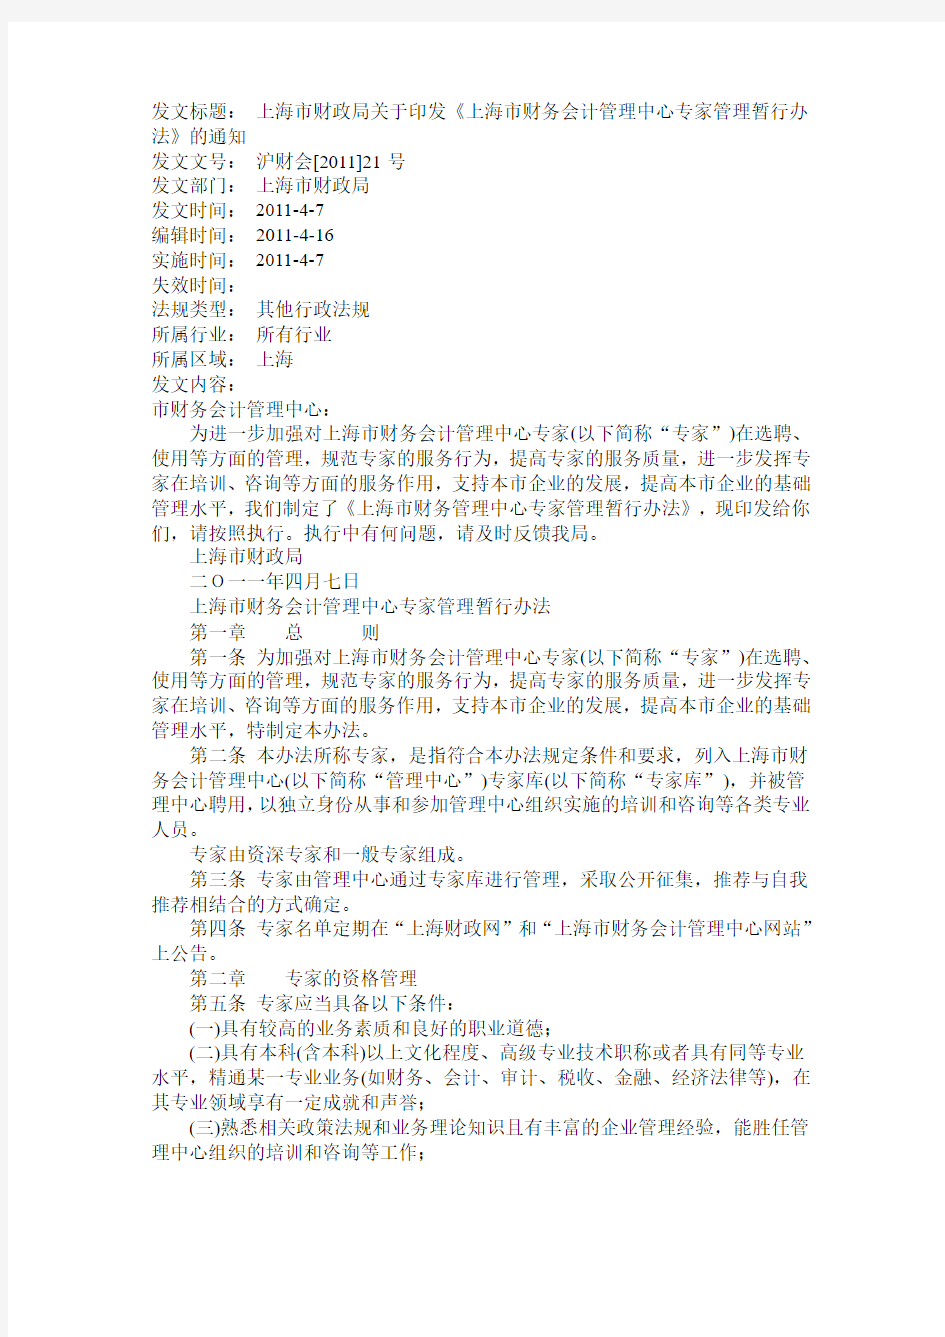 上海市财政局关于印发《上海市财务会计管理中心专家管理暂行办法》的通知